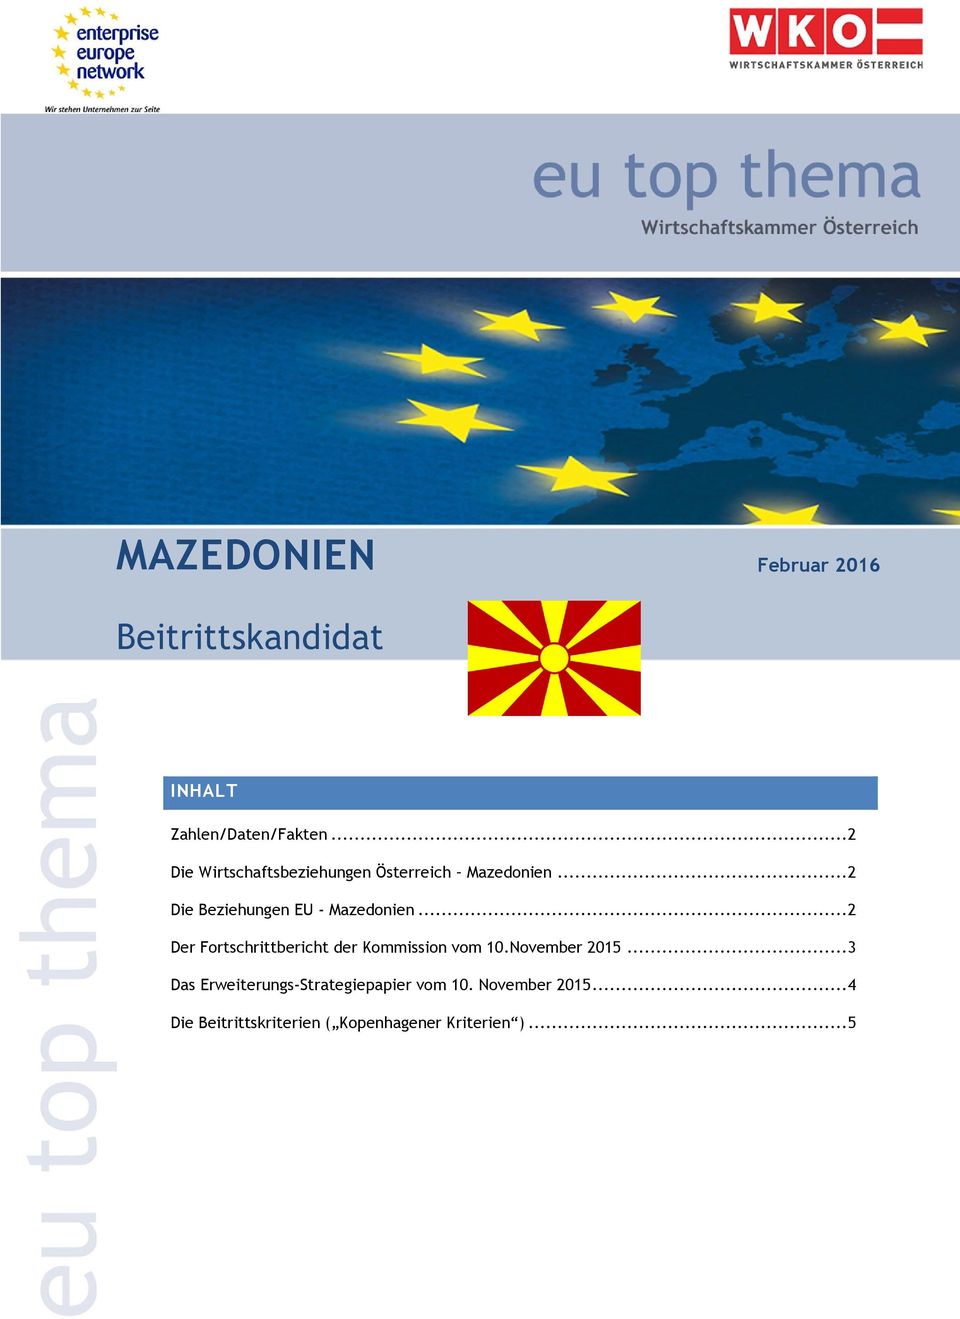 .. 2 Der Fortschrittbericht der Kommission vom 10.November 2015.